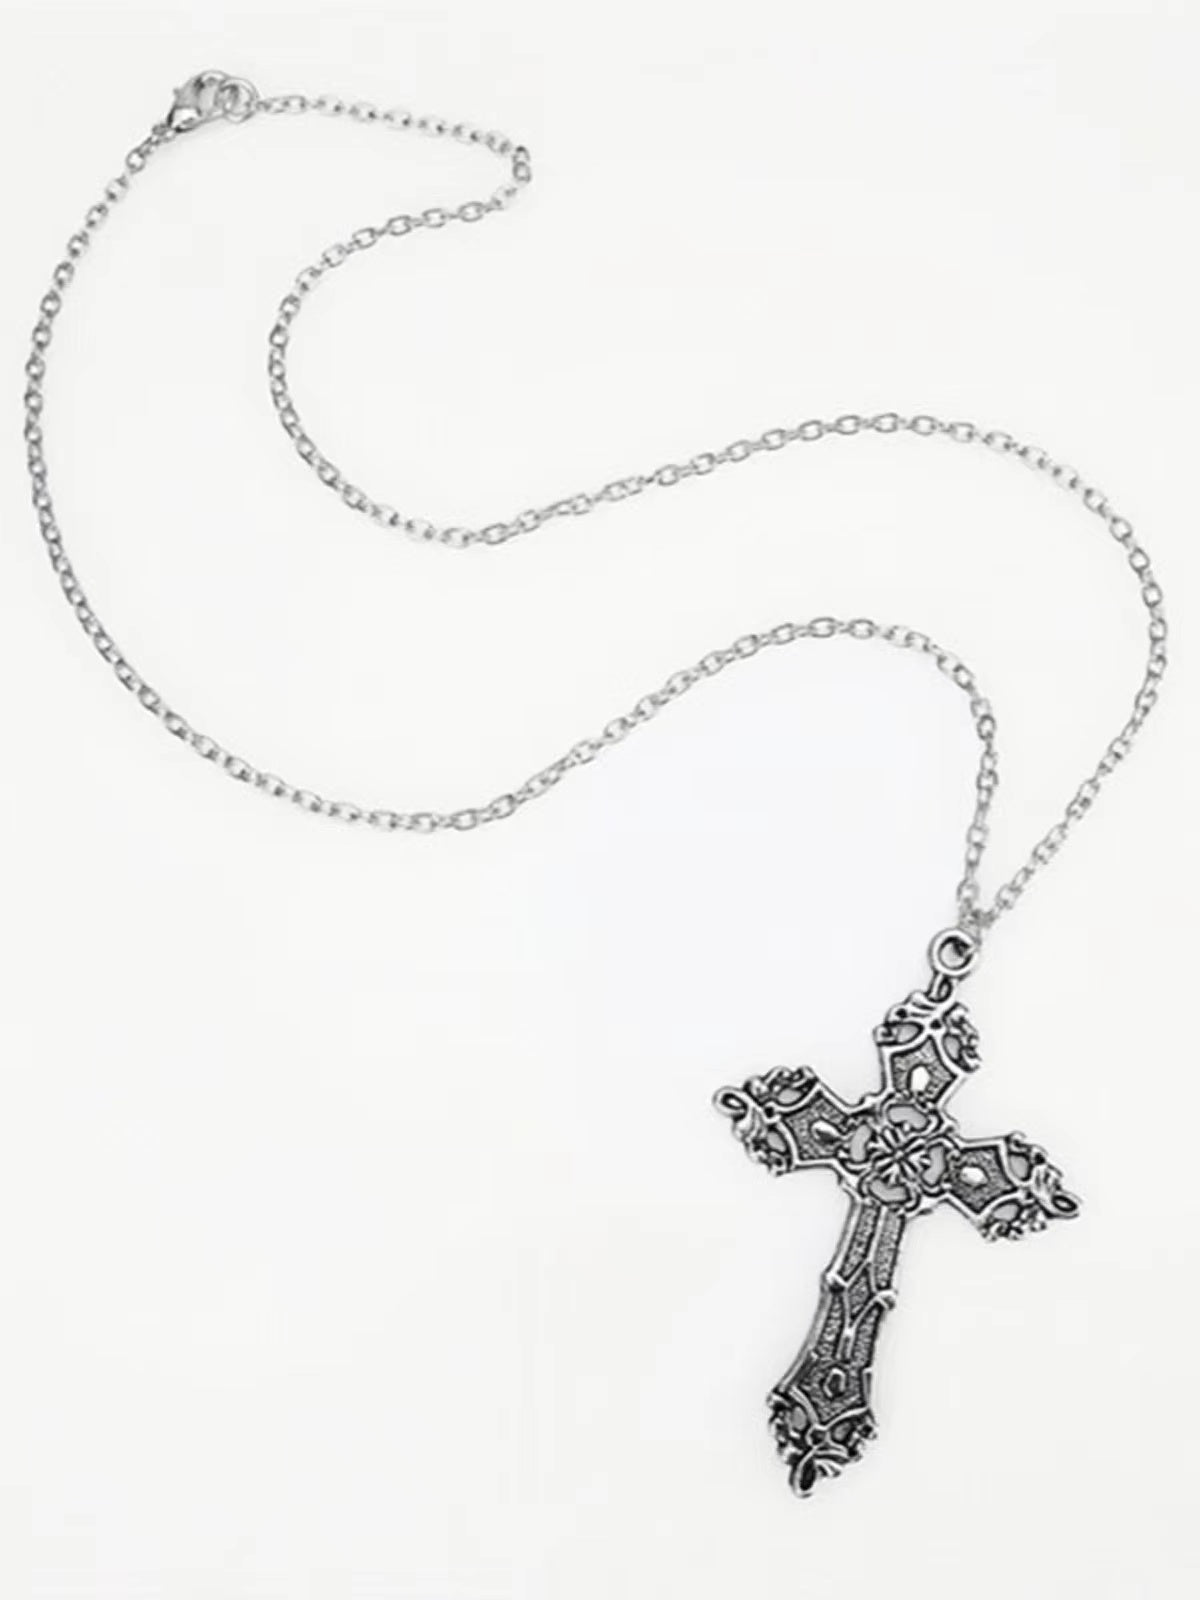 Vintage Punk Baroque Cross Necklace